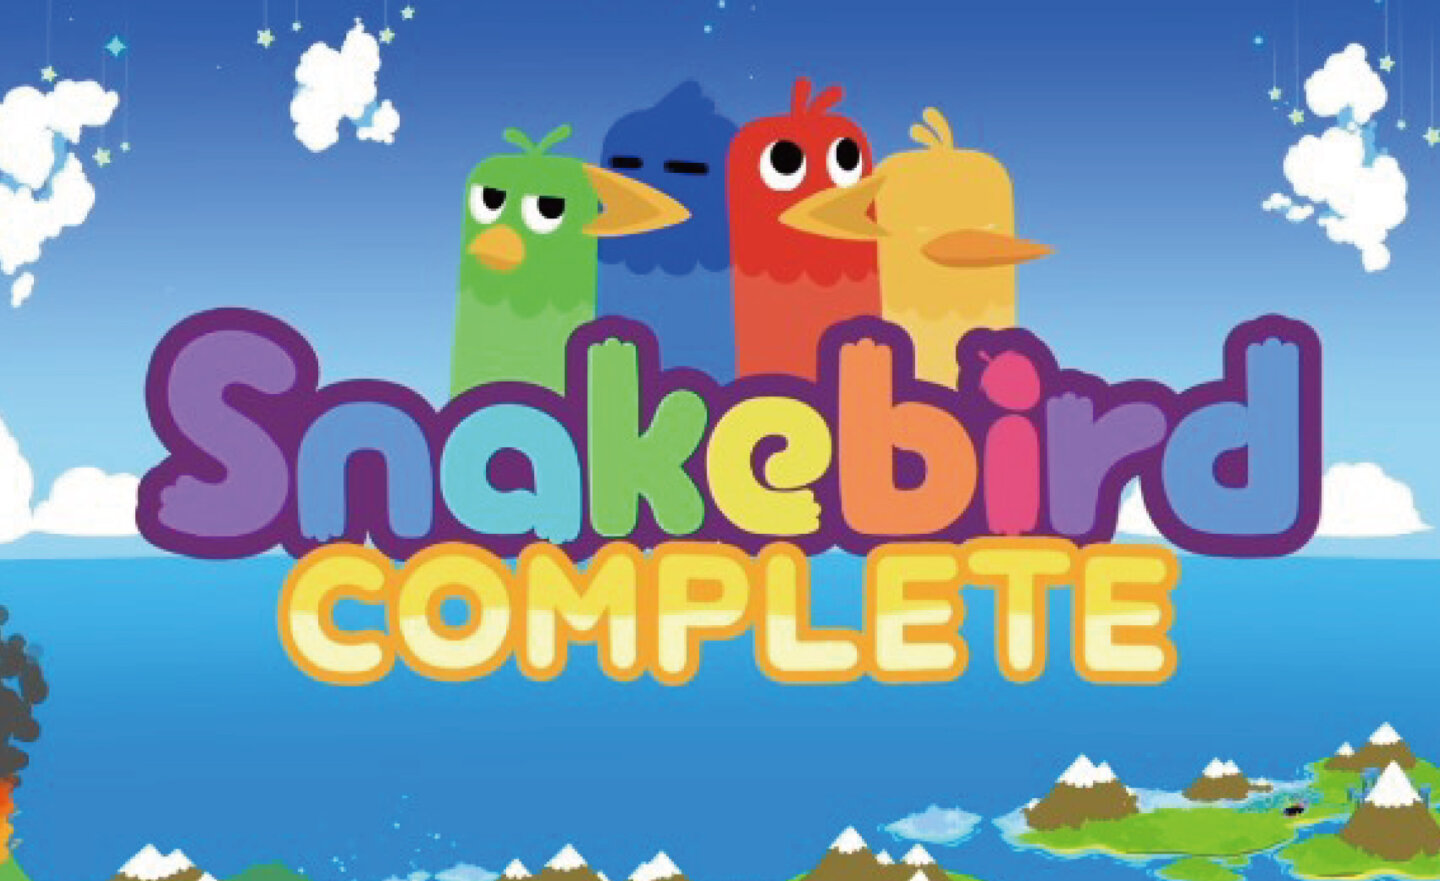 【限時免費】益智解謎遊戲《Snakebird Complete》快閃放送，2023 年 12 月 31日凌晨 00:00 截止